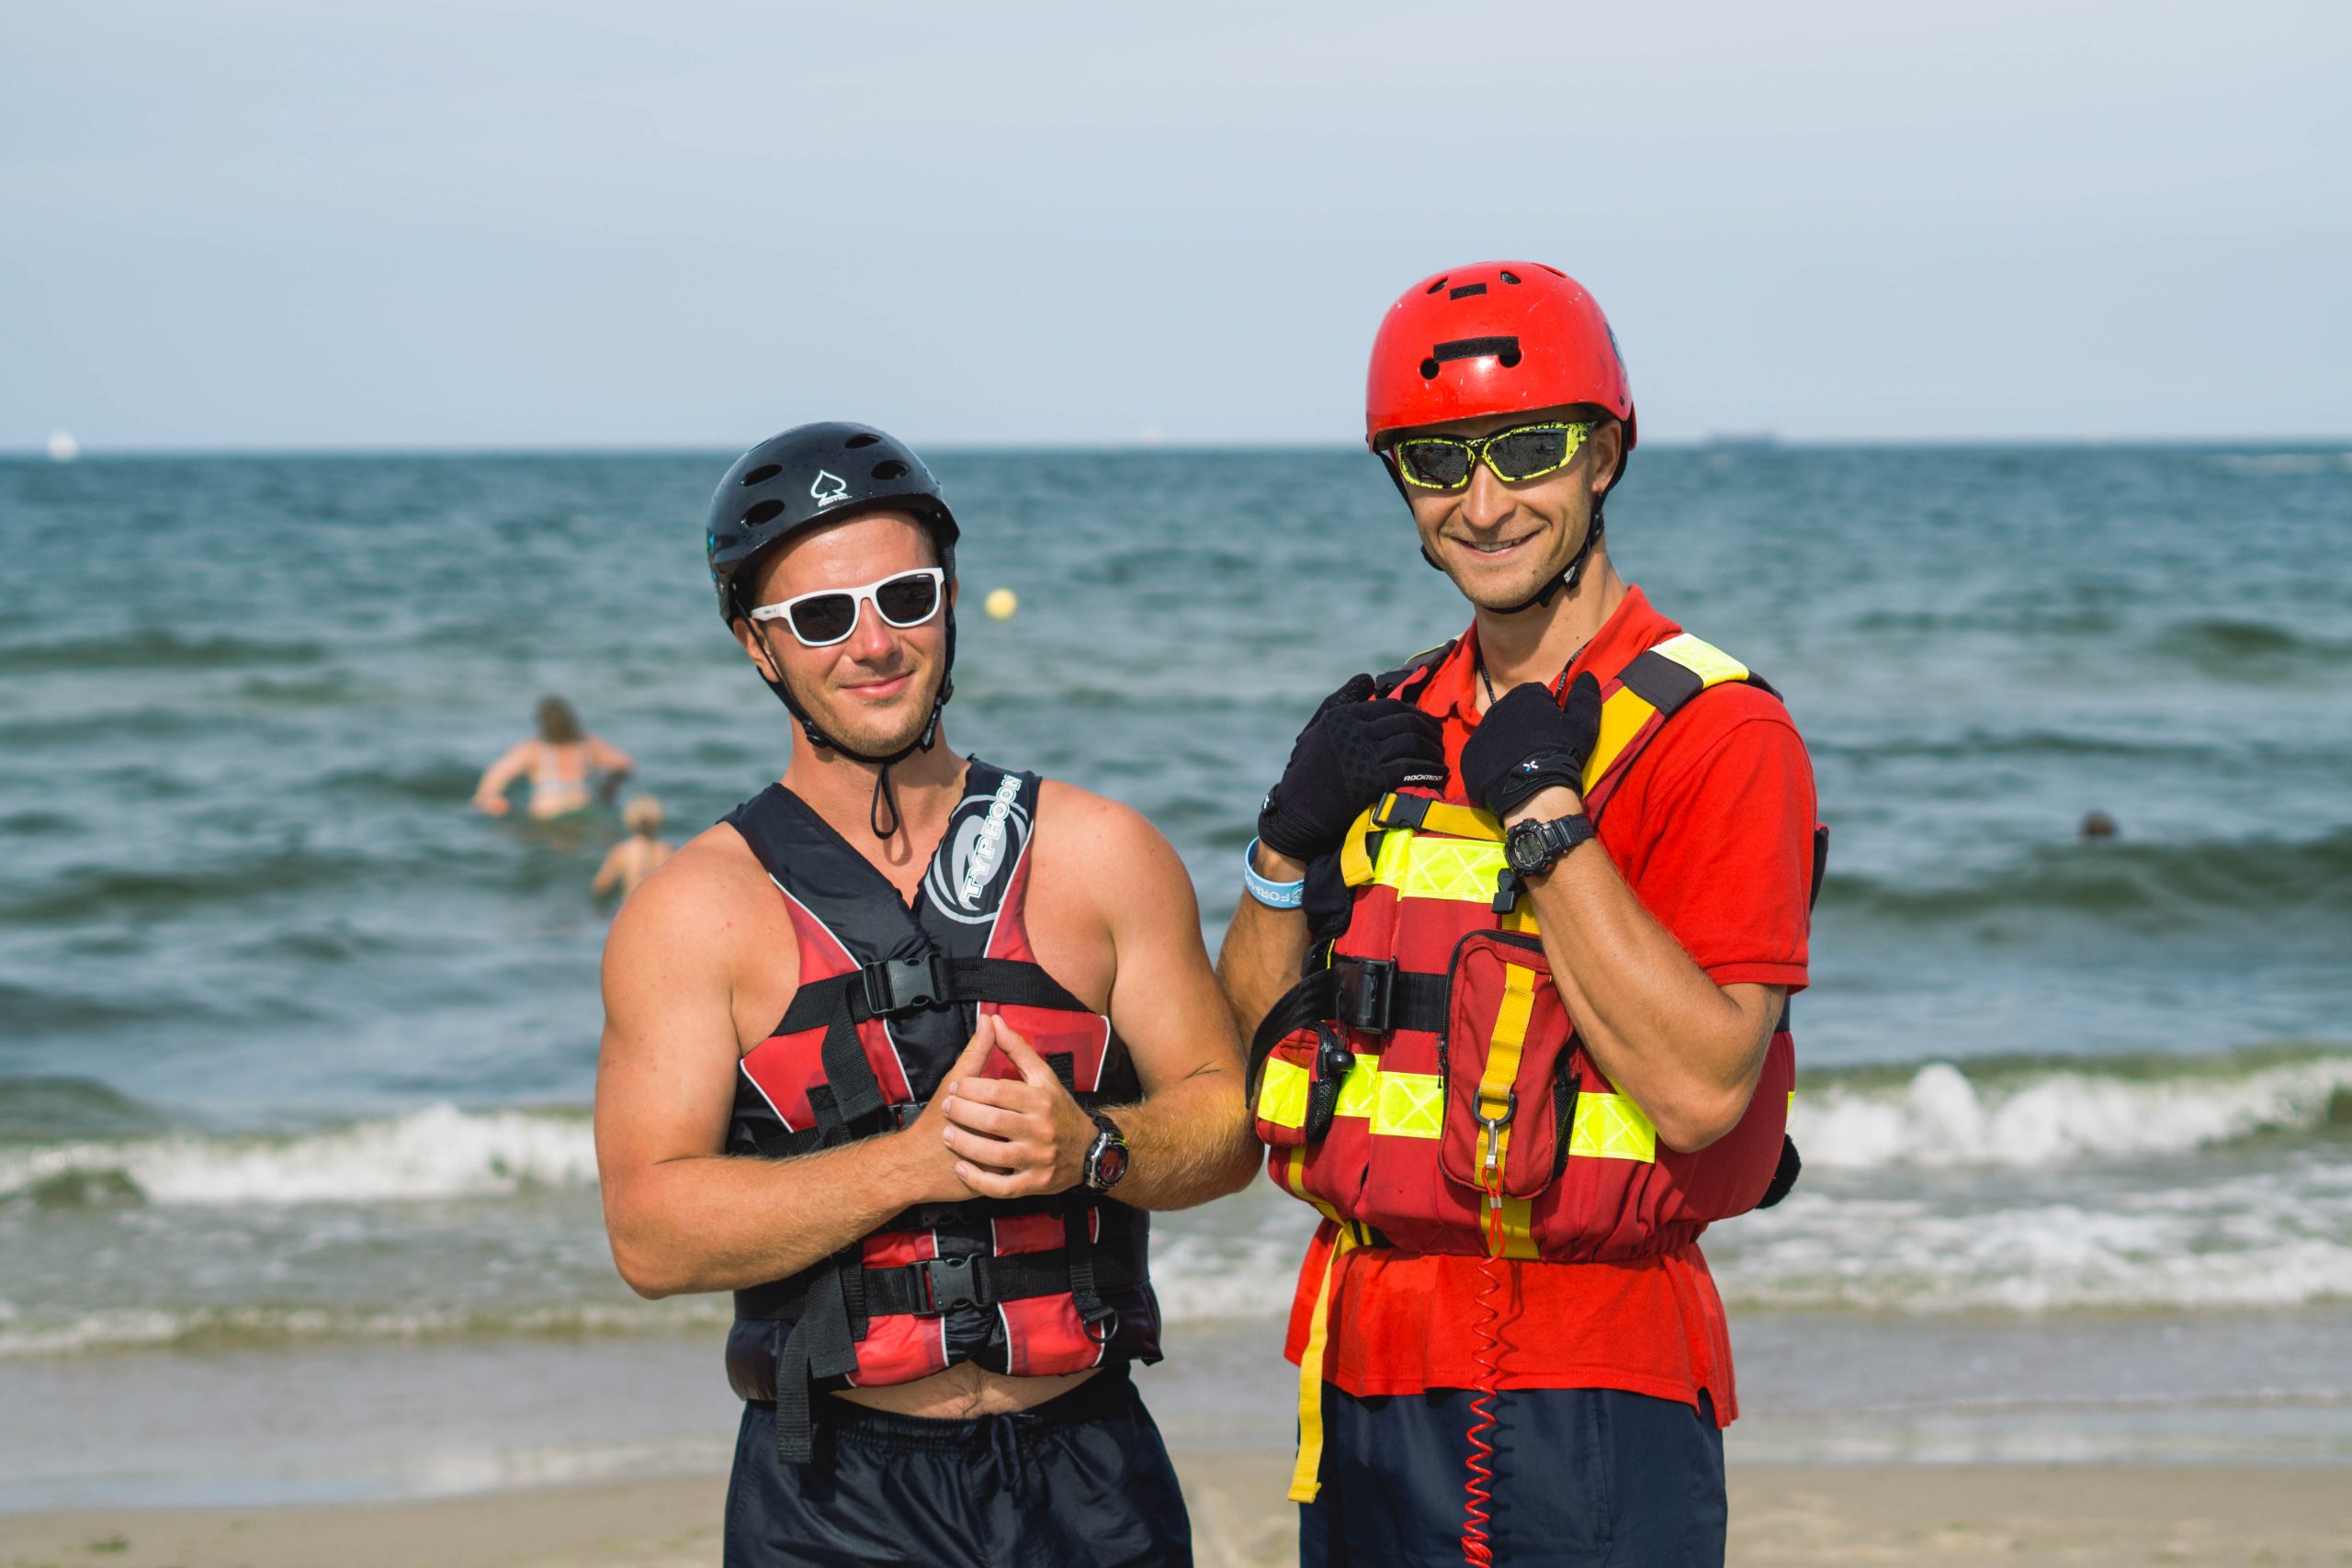 Ratownicy od 1 lipca strzegą gdańskich plaż. Można się jeszcze zgłosić do pracy